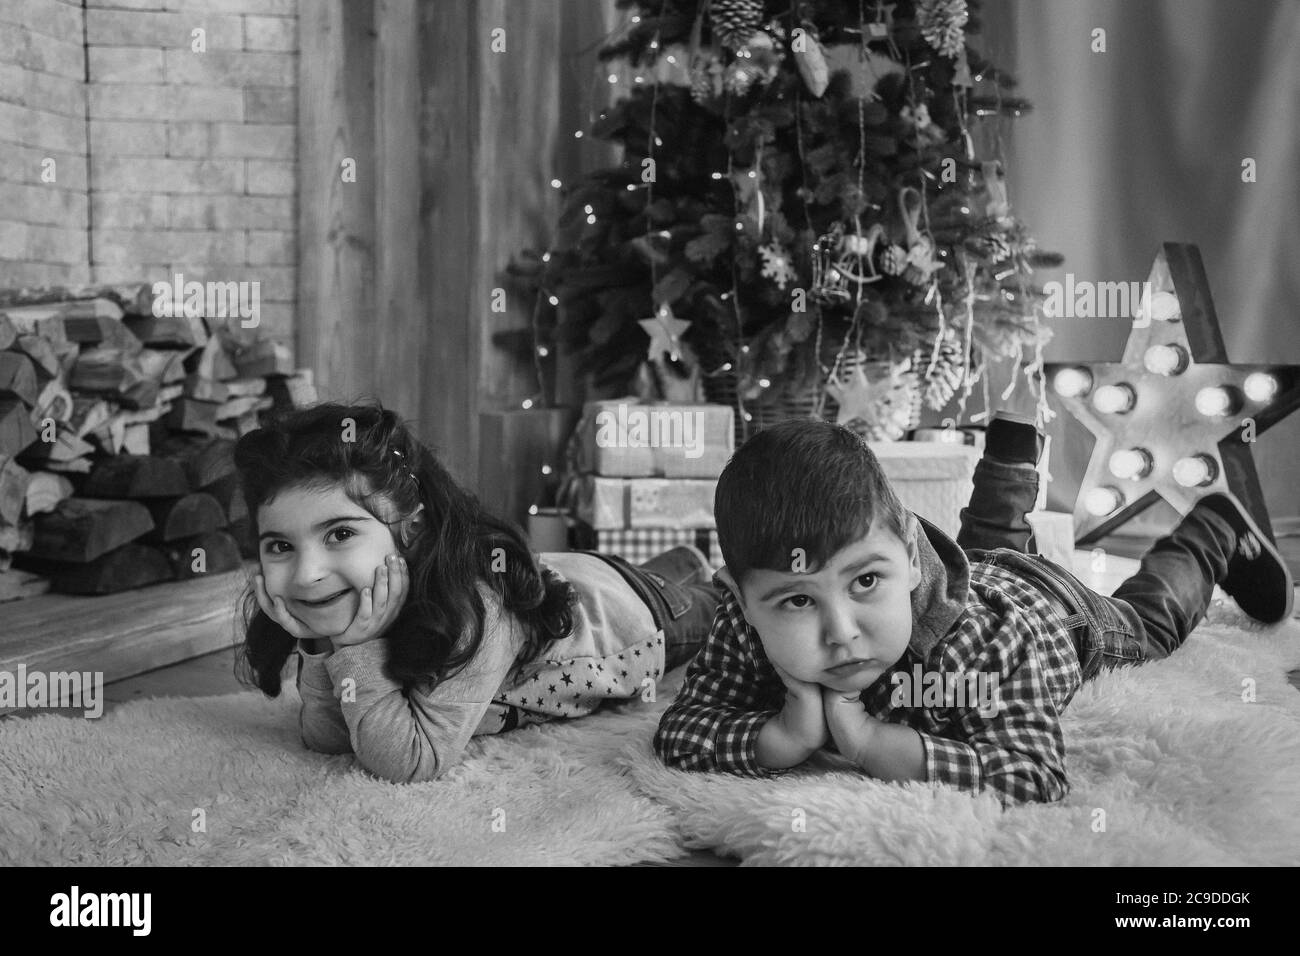 Weihnachtsporträt von schönen lächelnden kleinen Kindern liegen auf dem Boden mit Geschenken unter dem weihnachtsbaum. Winterurlaub Weihnachten und Neujahr Konzept Stockfoto